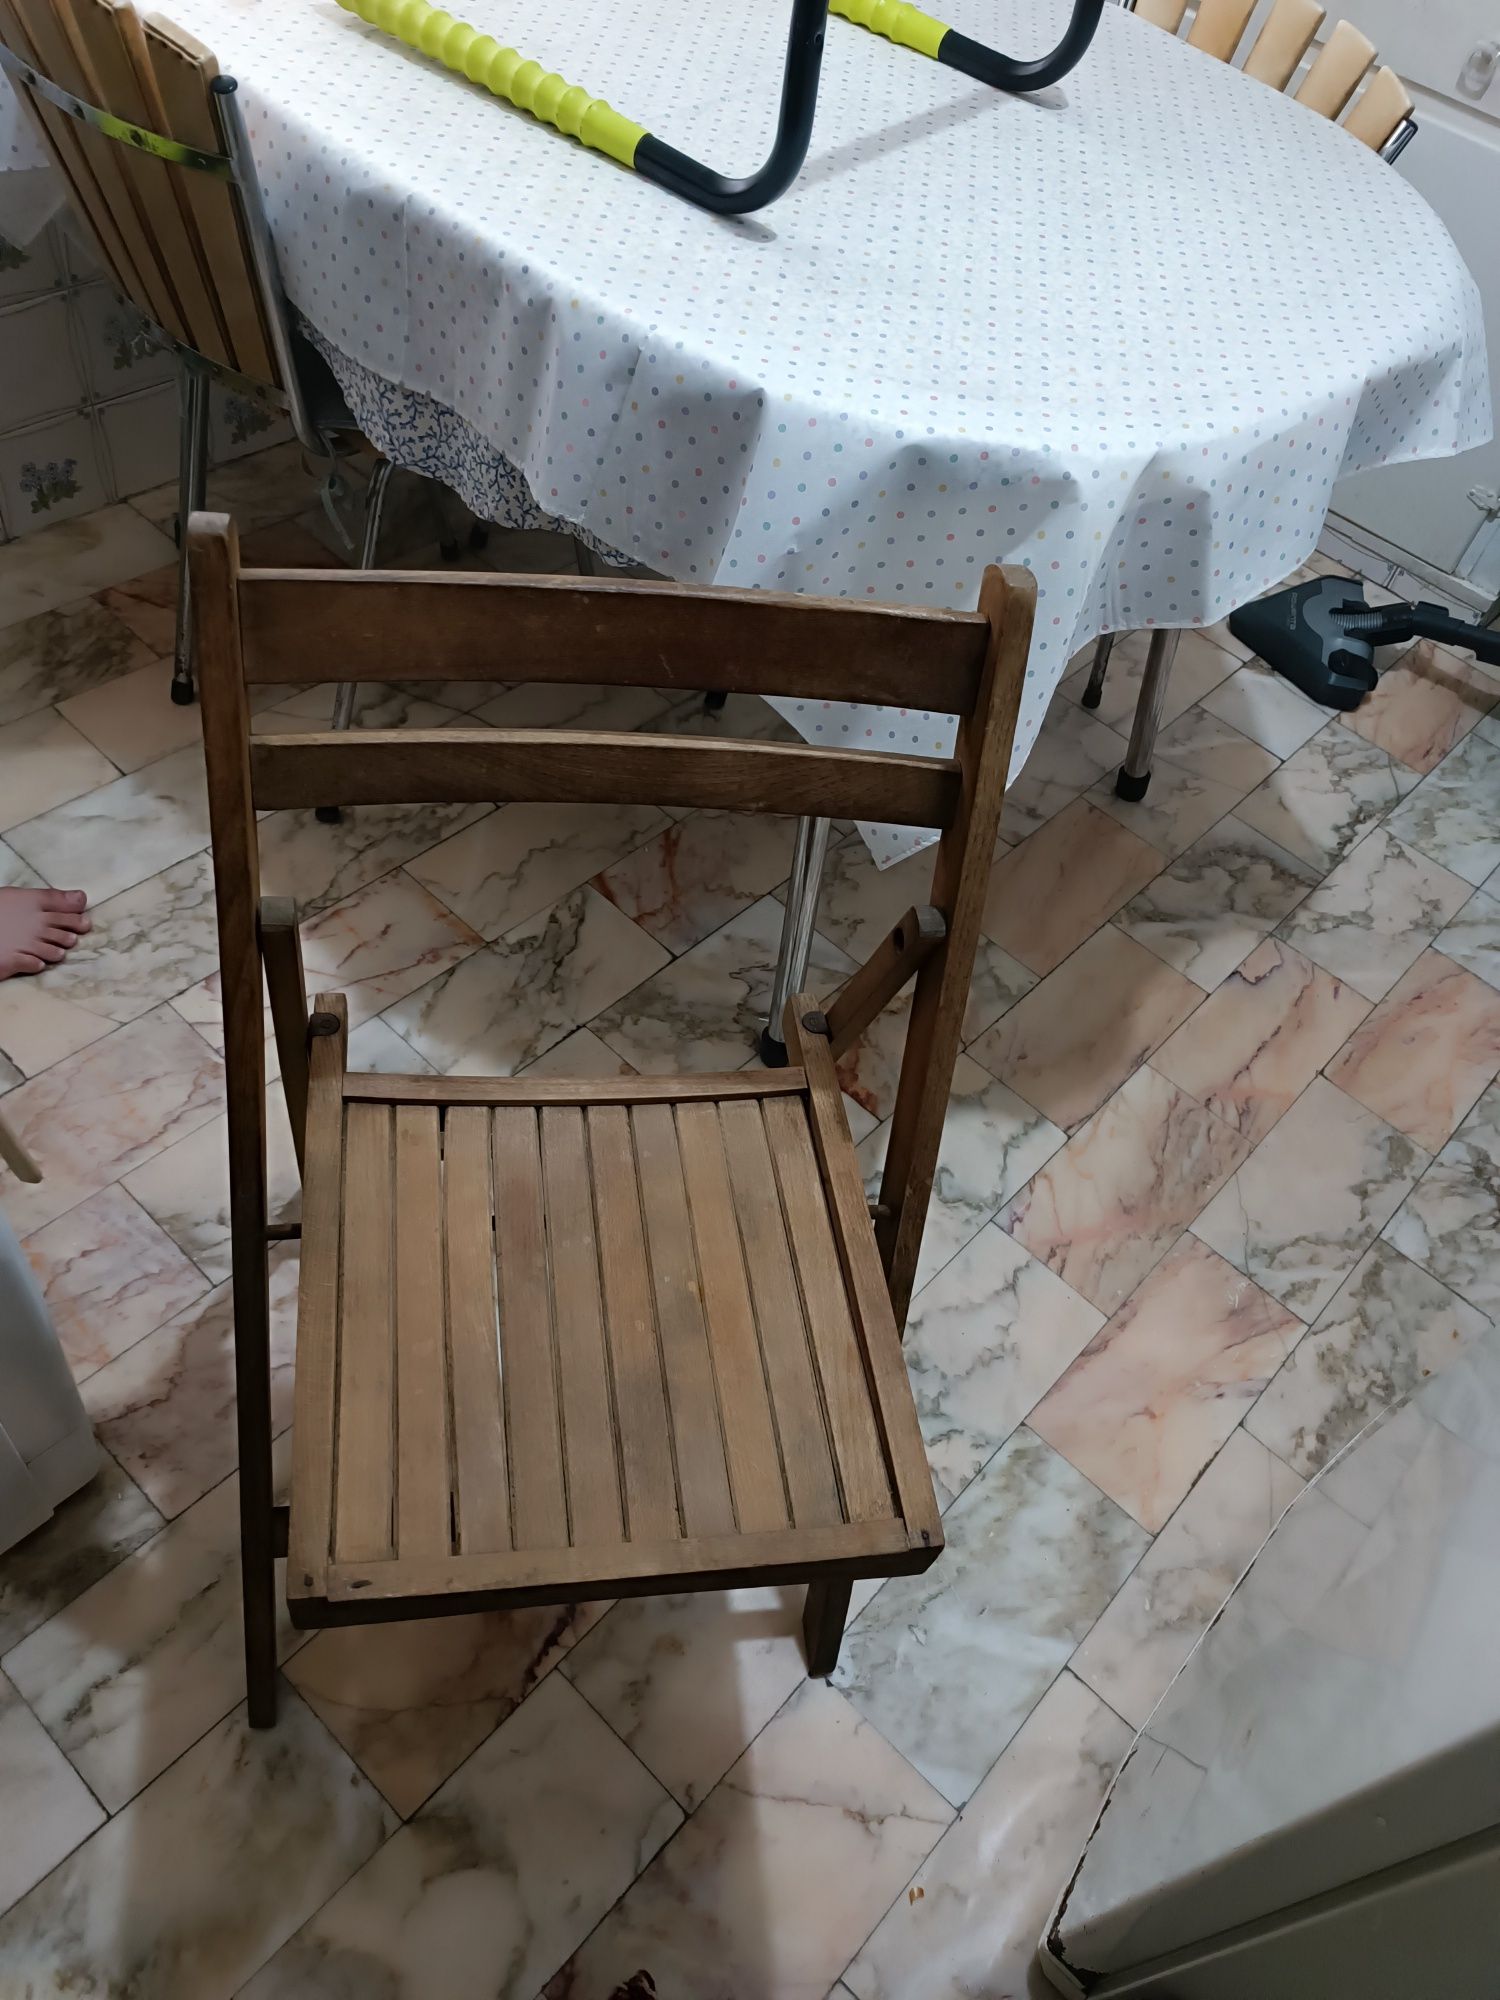 Cadeira de madeira dobrável